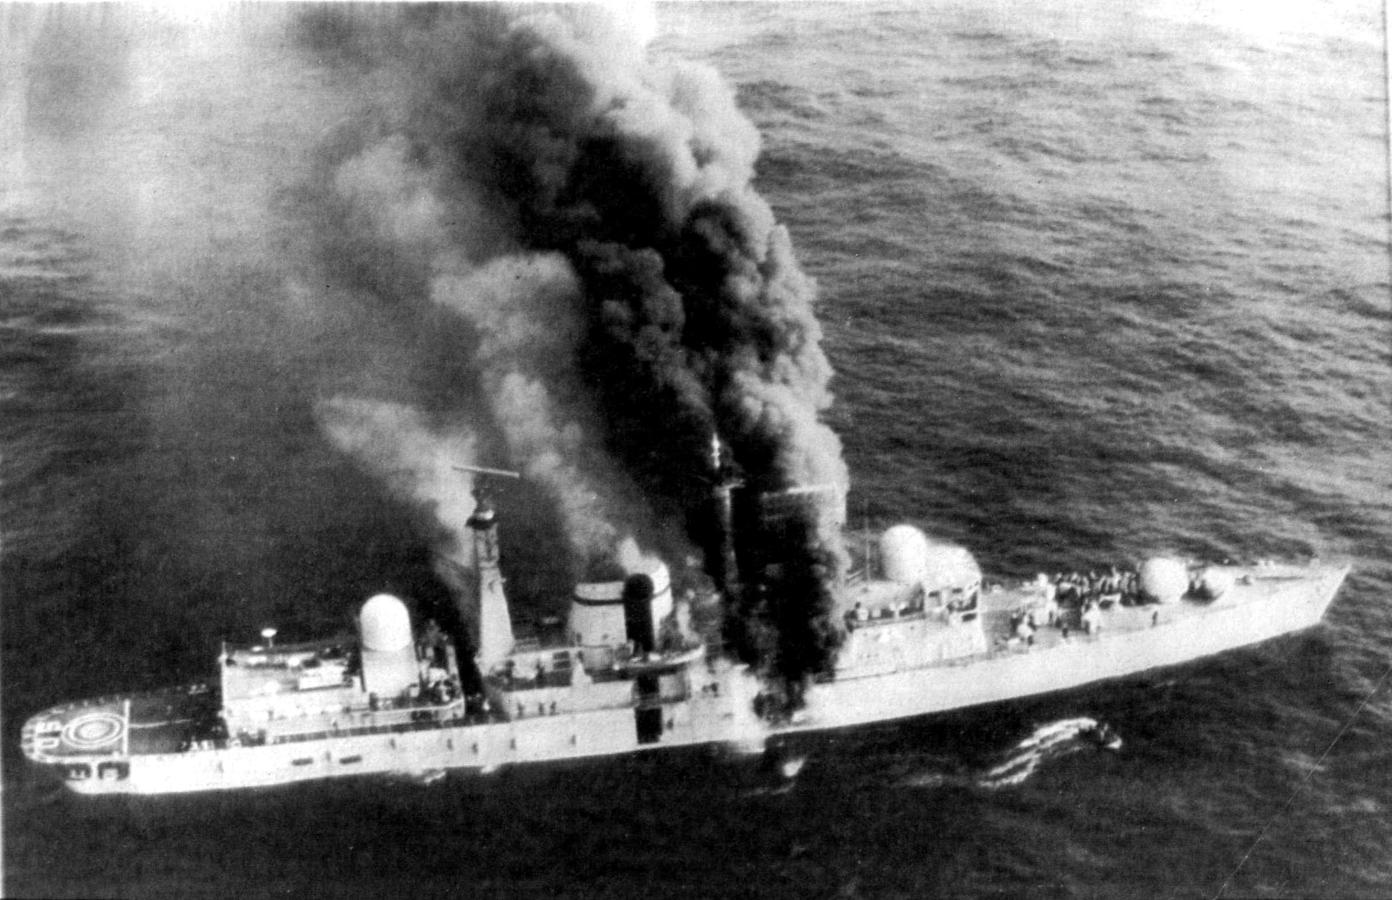 Incendio del destructor británico HMS Sheffield tras recibir el impacto de un misil Exocet lanzado por el ejército argentino. 